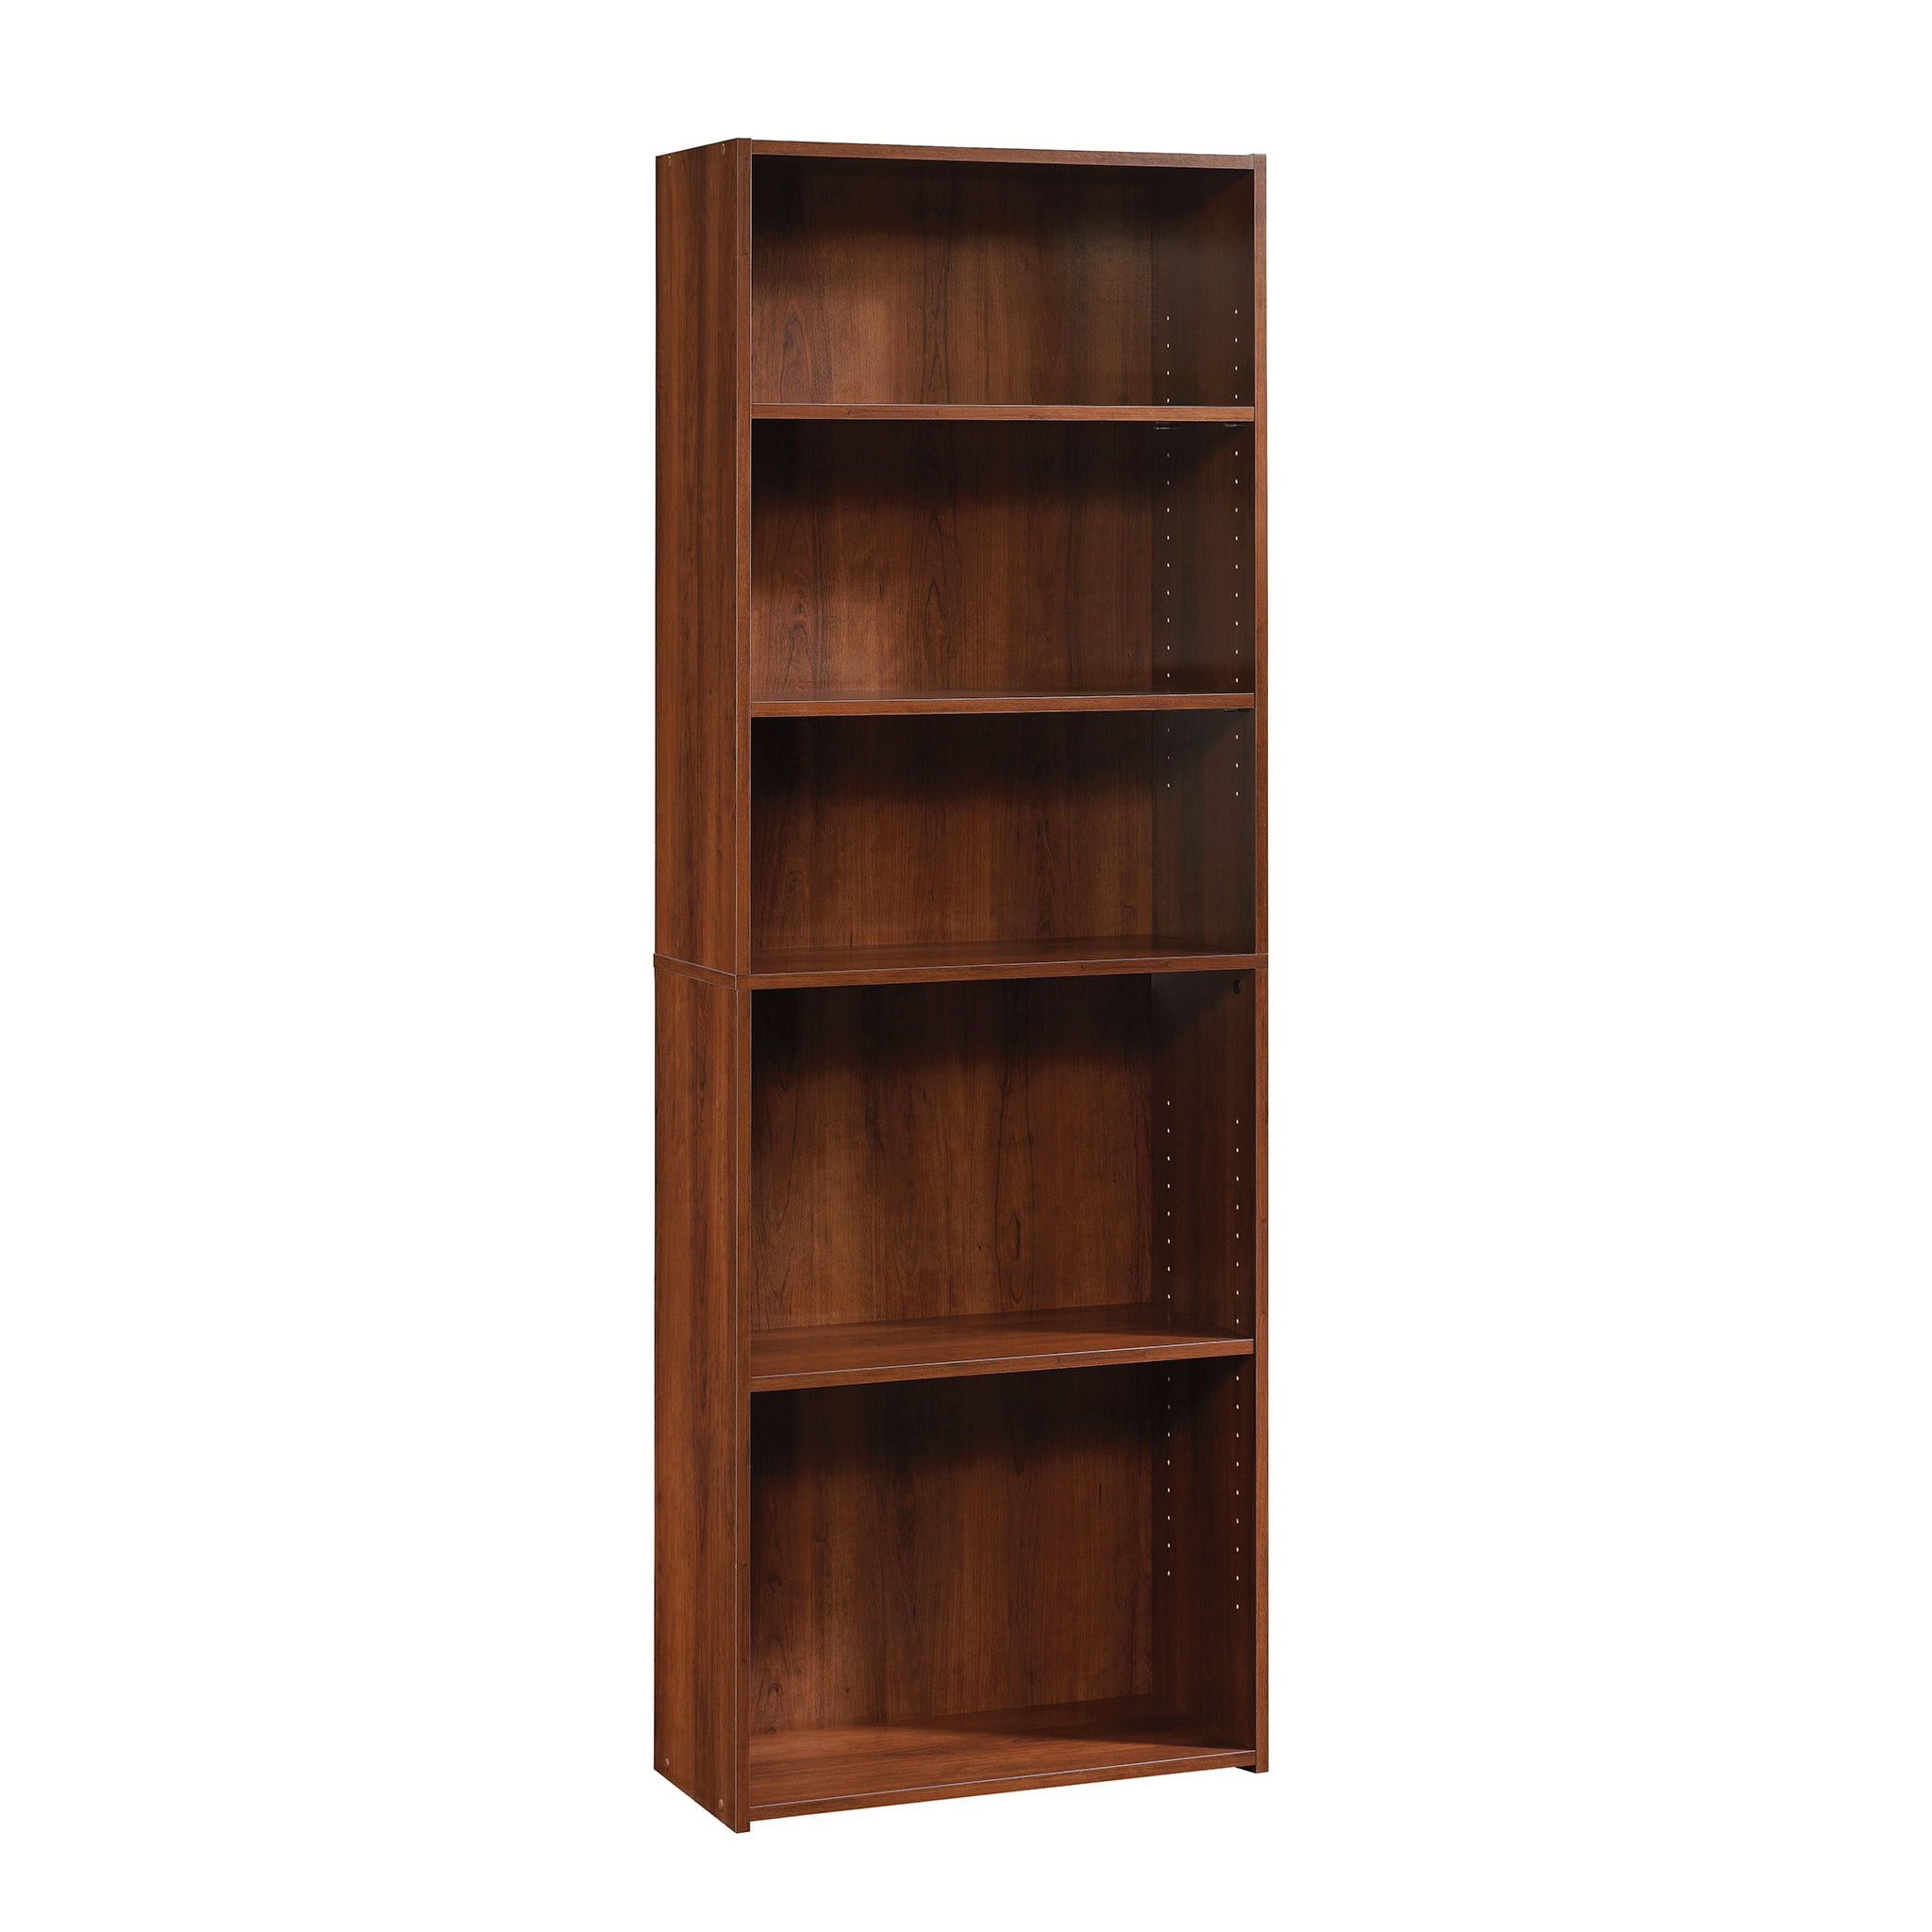 Sauder Beginnings 5 Shelf Bookcase, Wooden Book Shelves